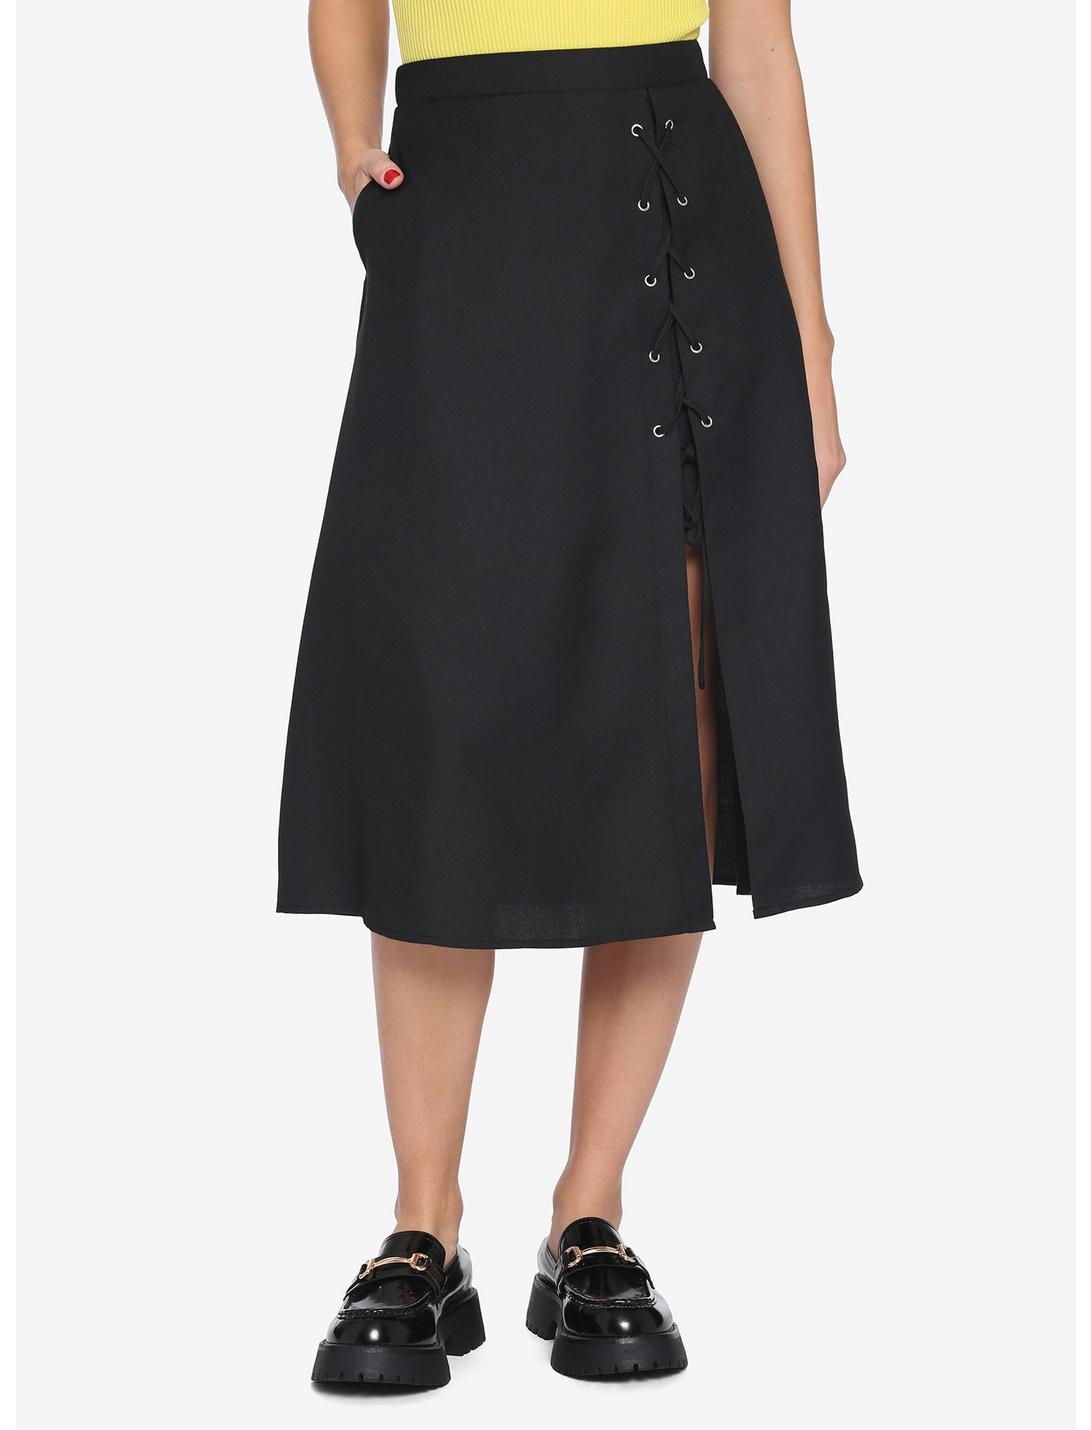 Black Lace-Up Slit Midi Skirt, BLACK, hi-res